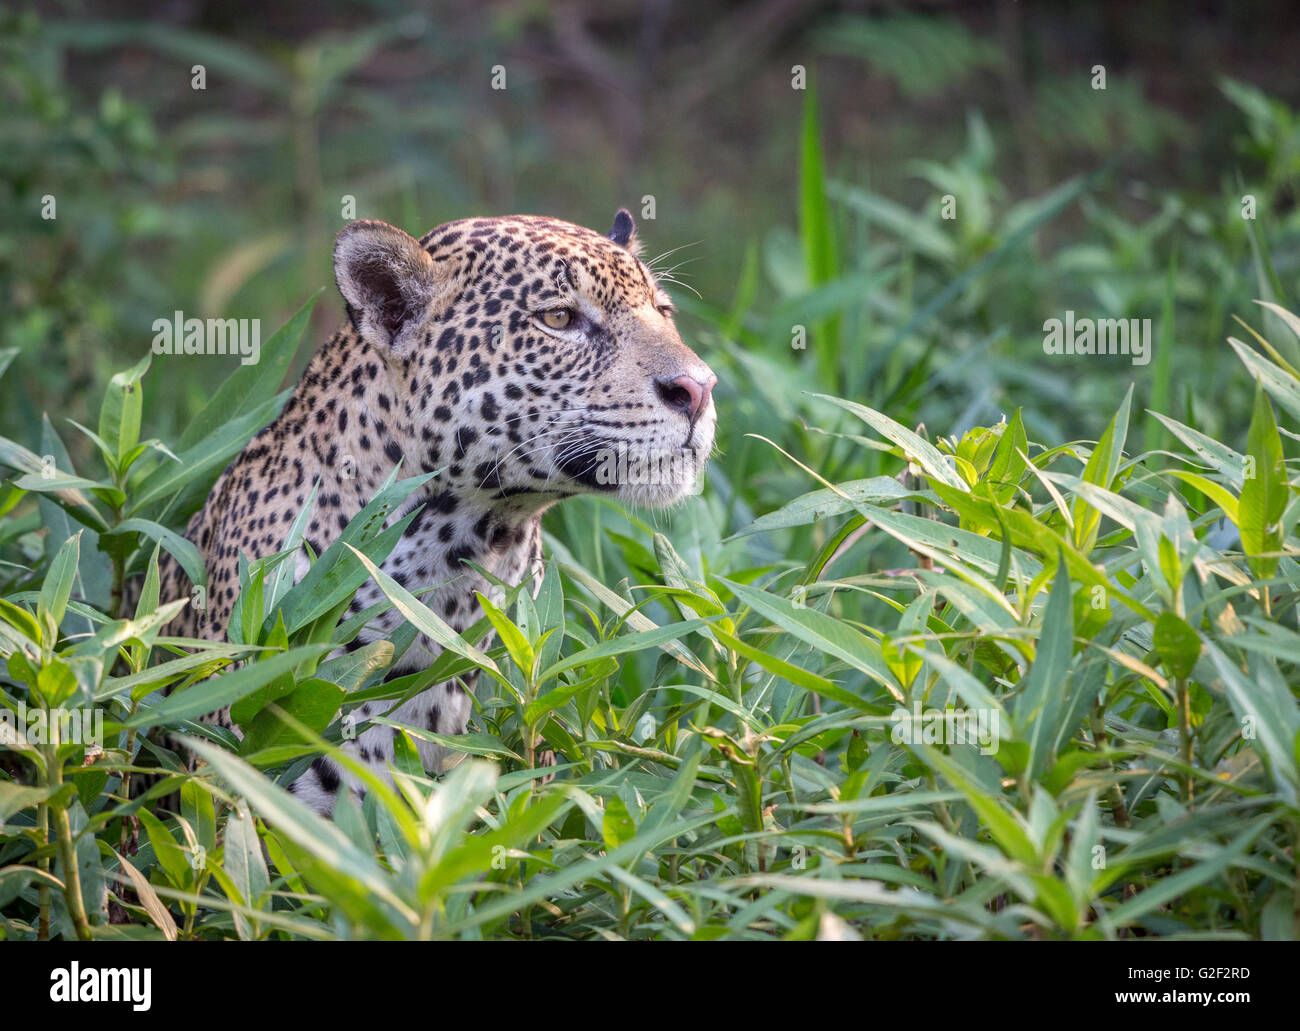 Jaguar contemplating Prey Stock Photo